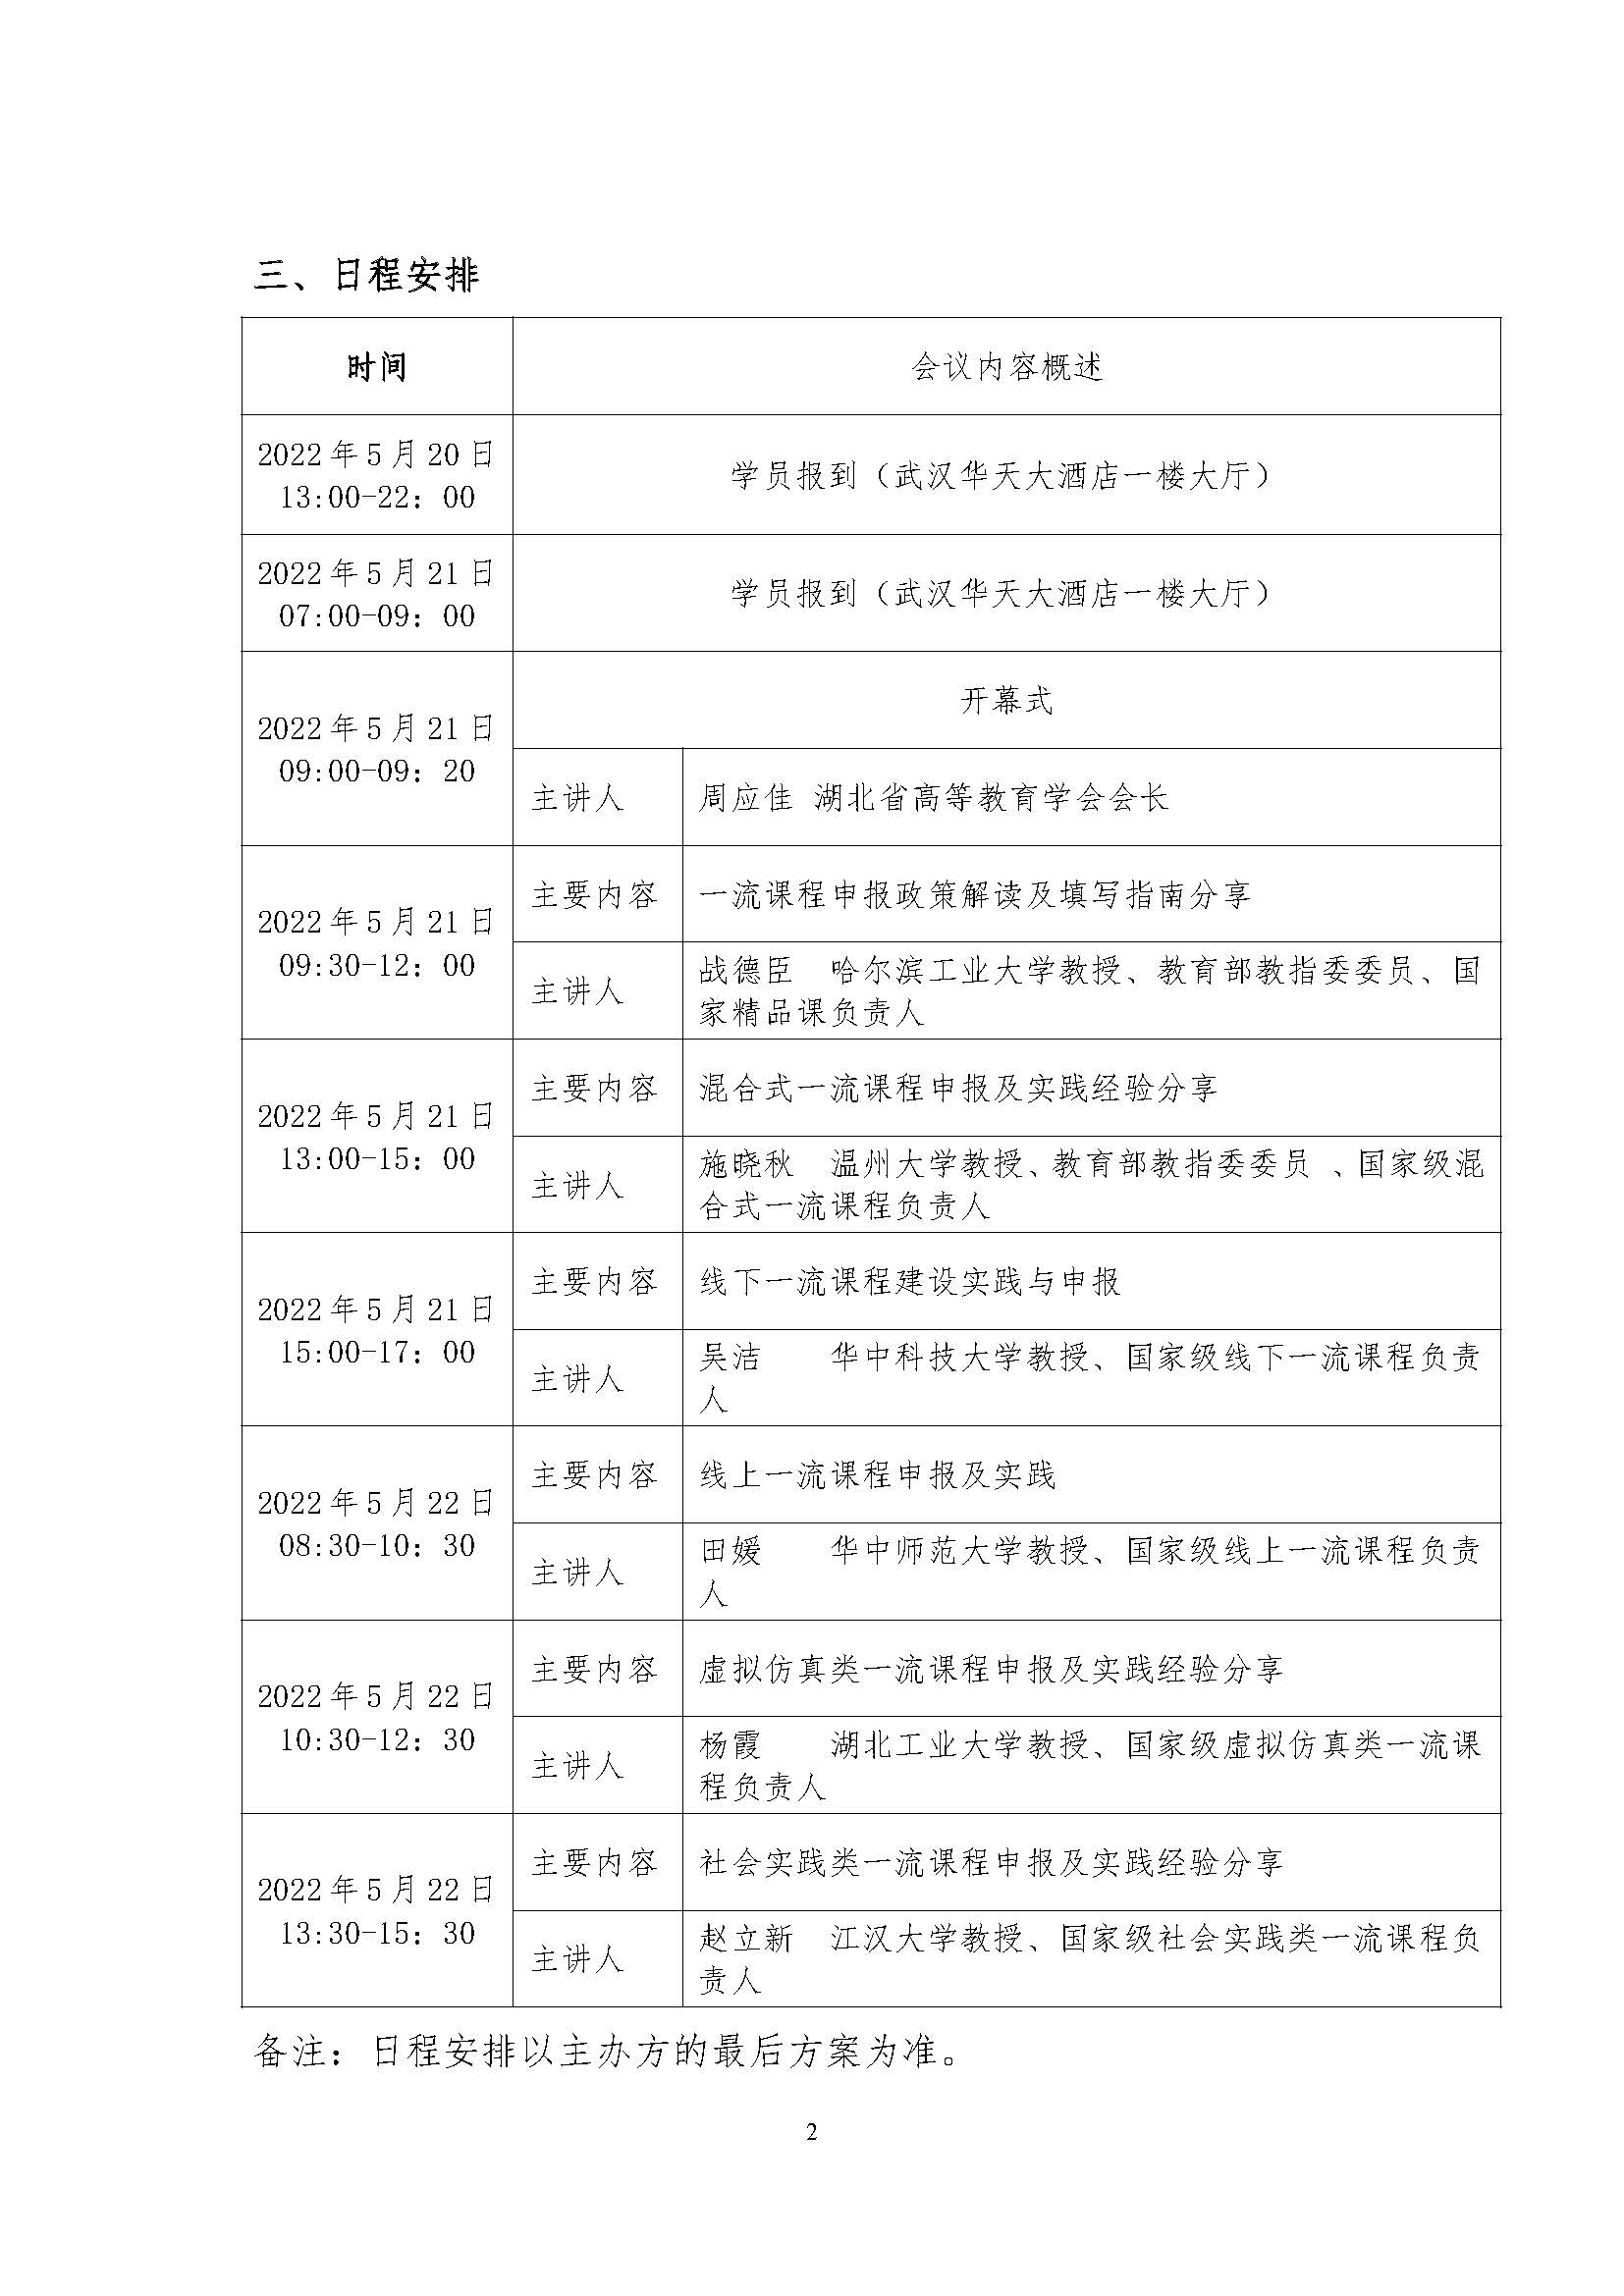 （会议邀请）湖北省高等教育学会一流本科课程会议通知建设与申报_页面_2.jpg